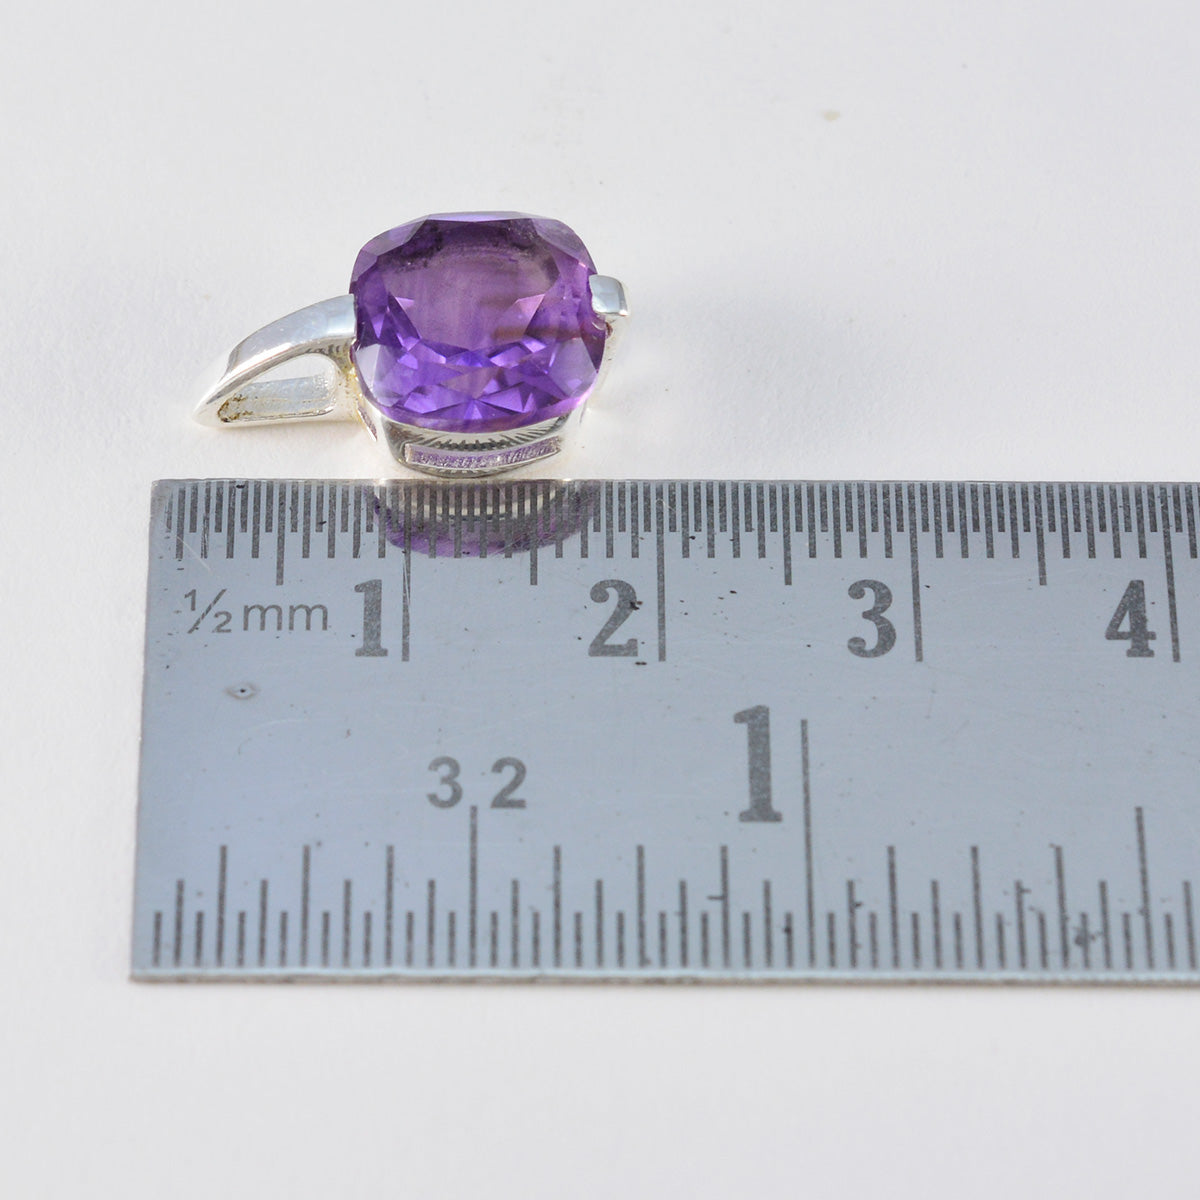 Riyo bonita piedra preciosa ovalada facetada amatista púrpura colgante de plata de ley 937 regalo para cumpleaños